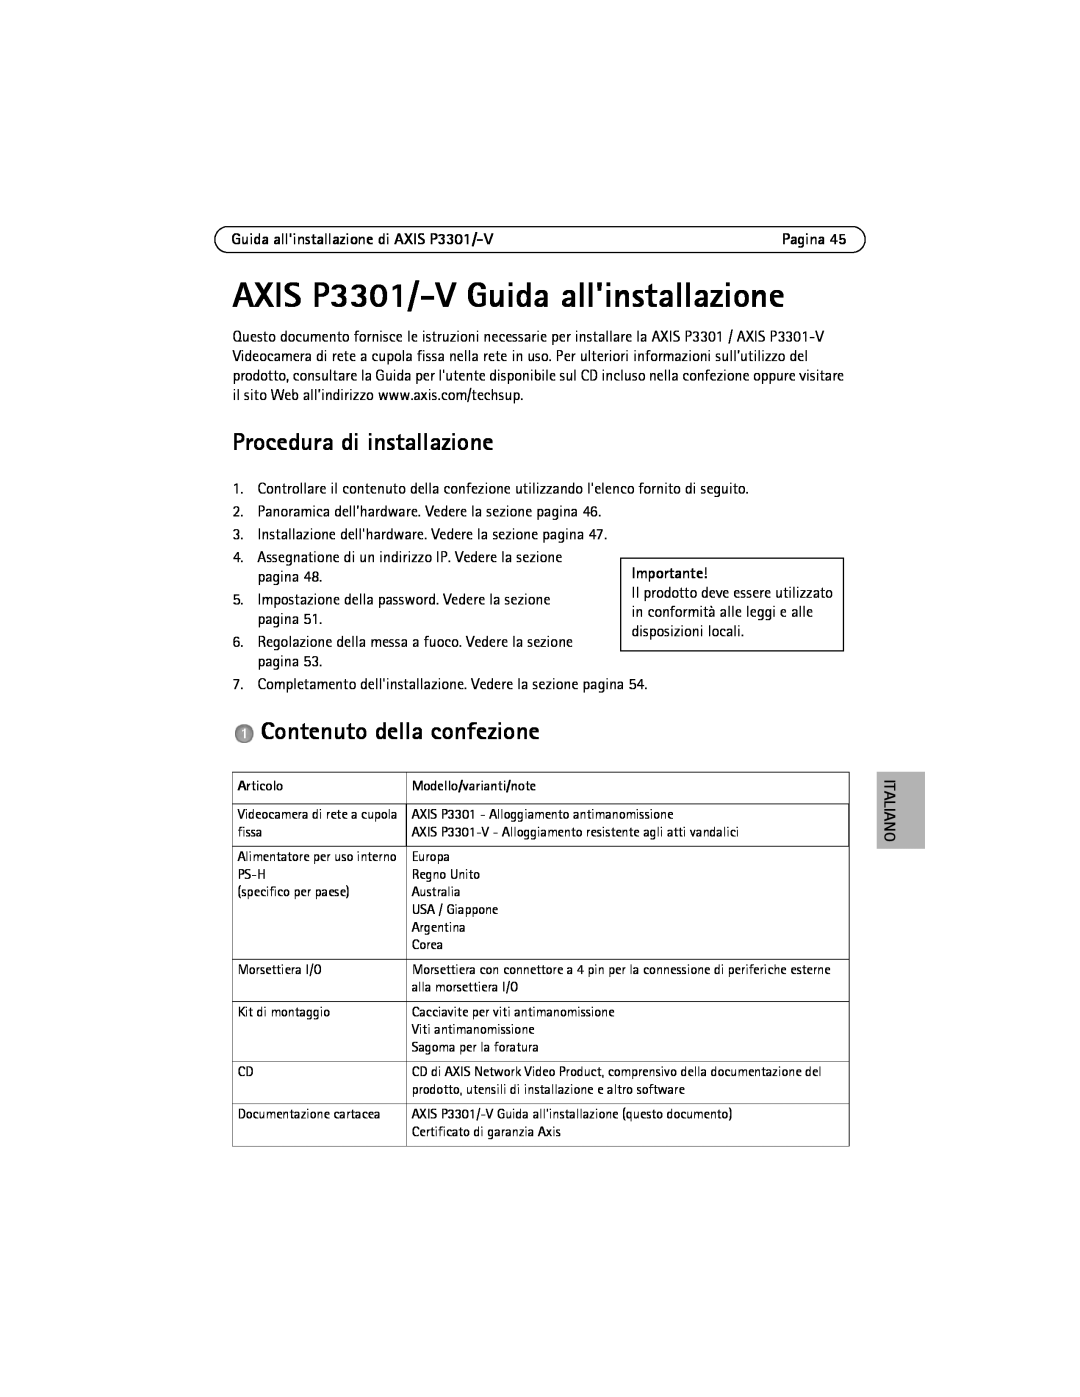 Axis Communications manual AXIS P3301/-V Guida allinstallazione, Procedura di installazione, Contenuto della confezione 